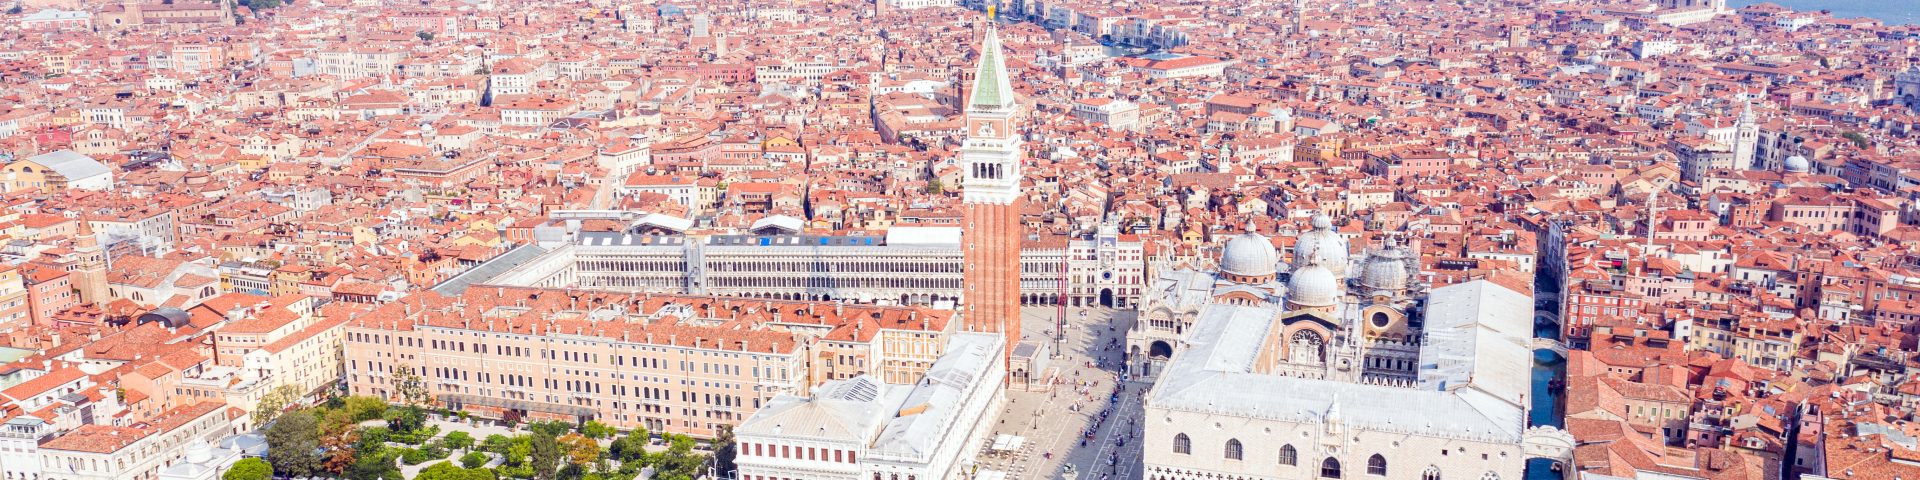 Венеция. Вид на площадь Сан-Марко и Дворец дожей. Источник иллюстрации: Викимедиа